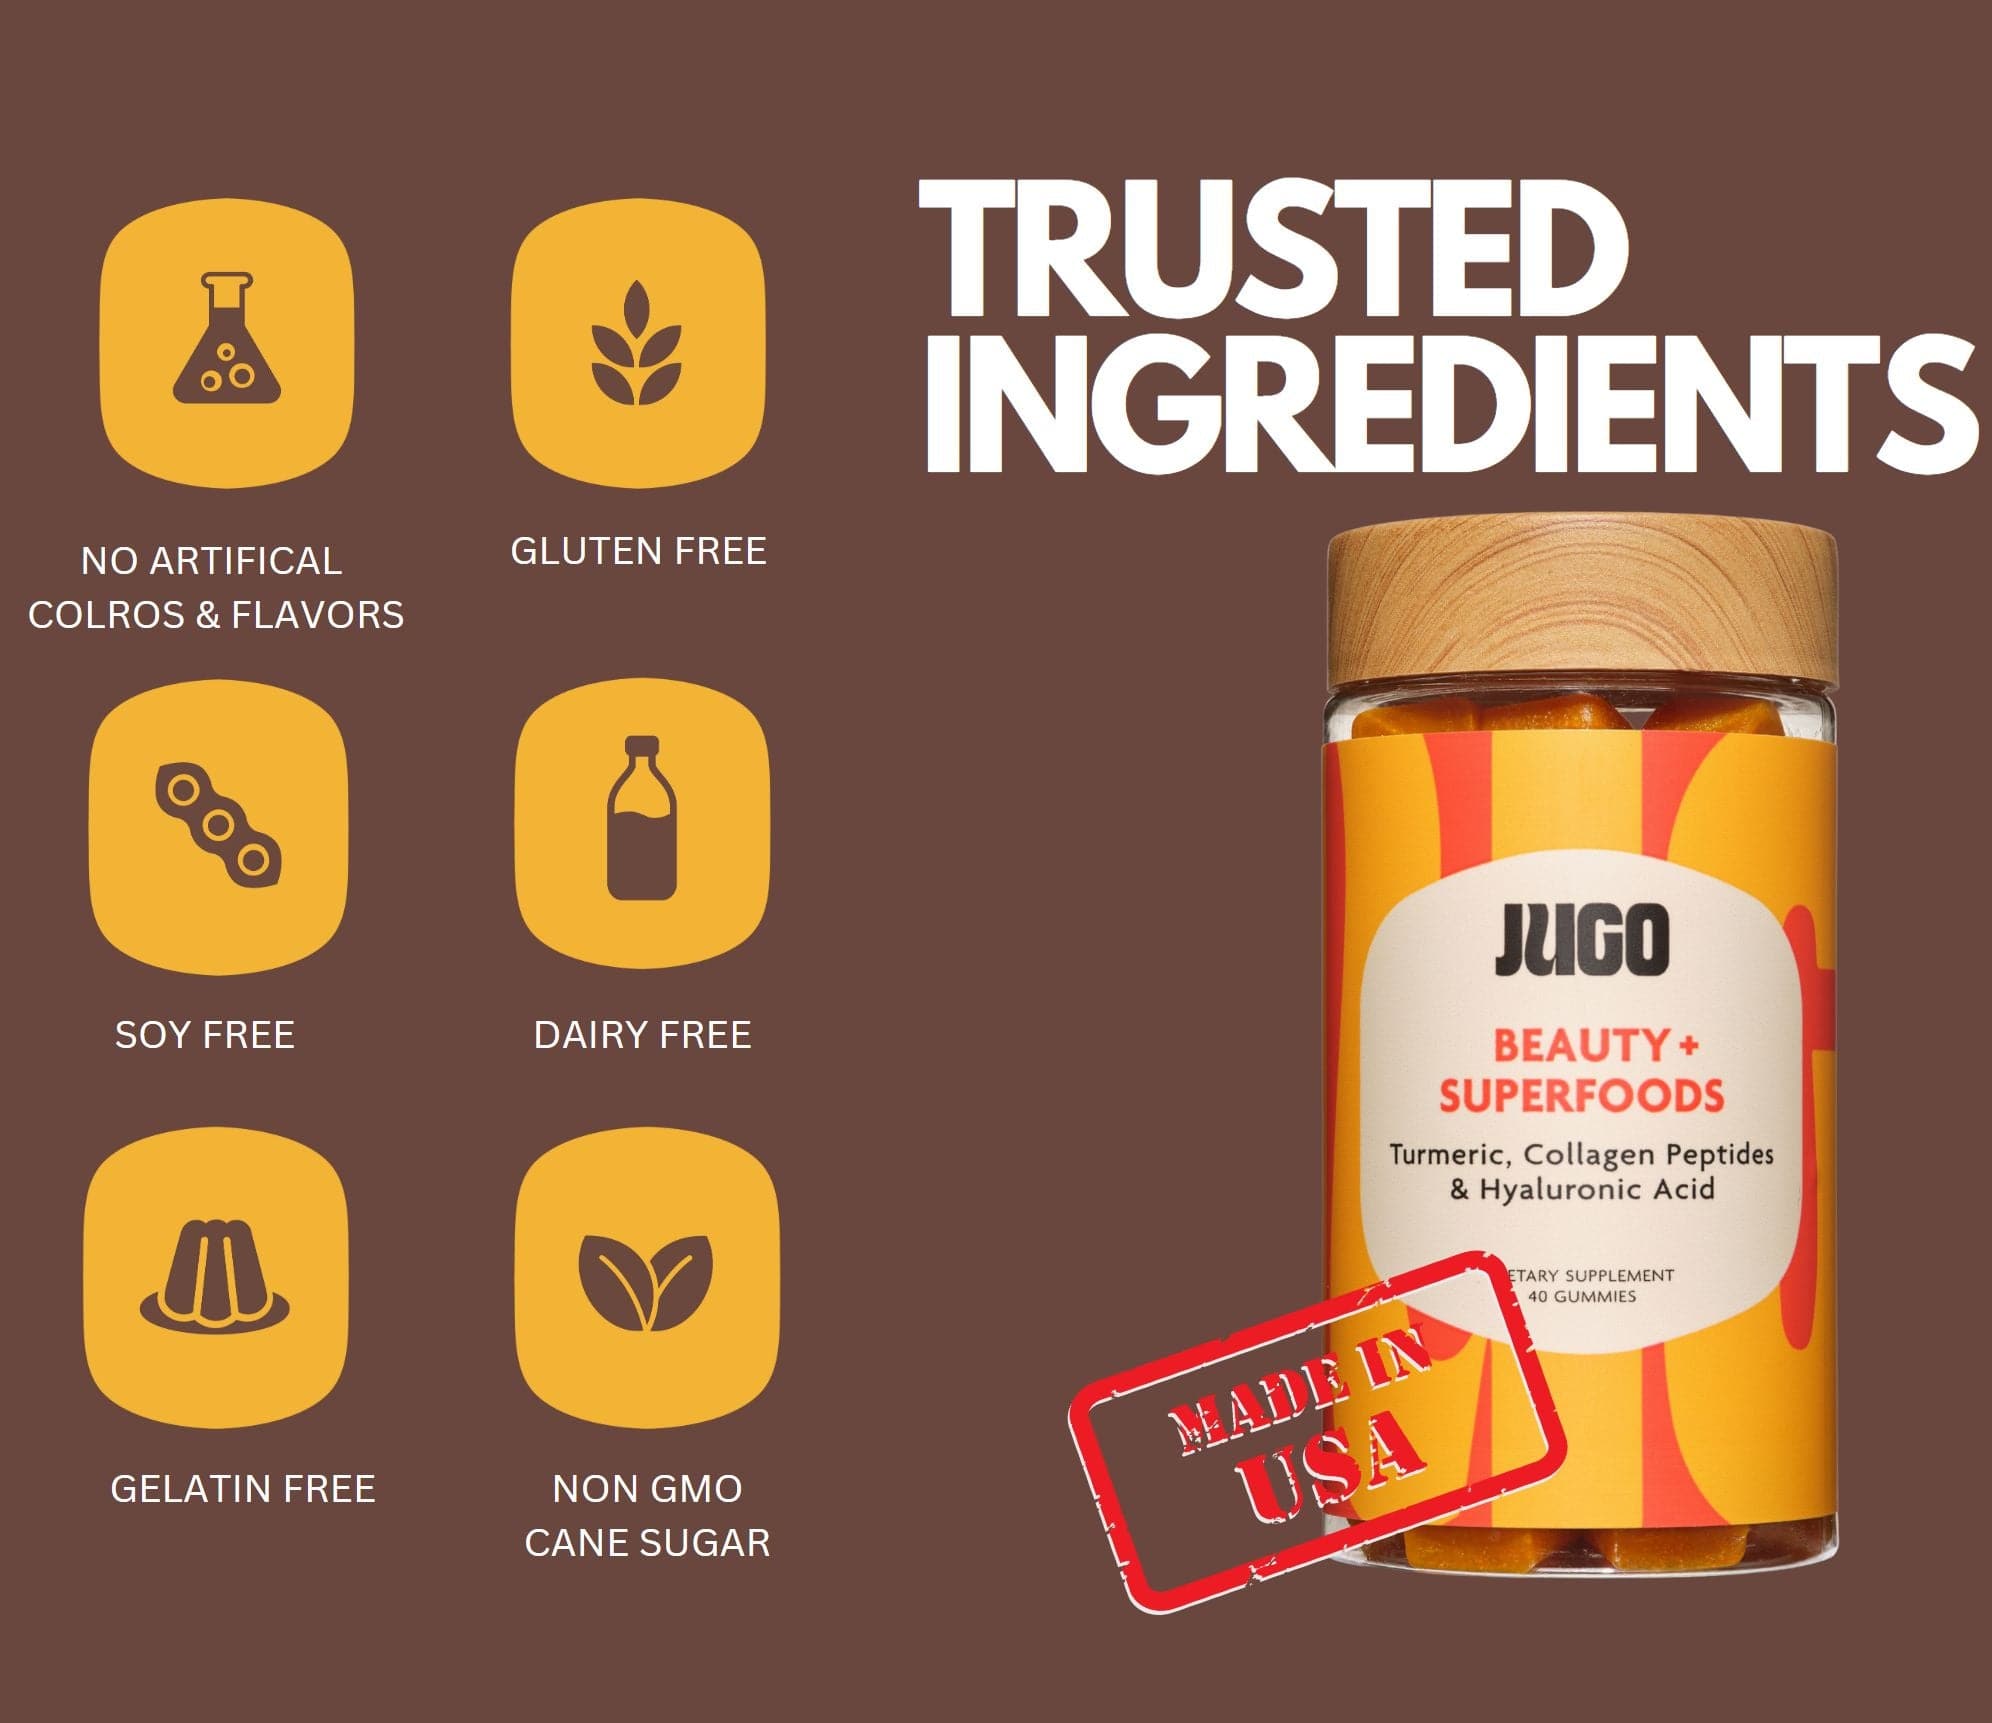 Trusted ingredients in JUGO BEAUTY + SUPERFOODS gummies